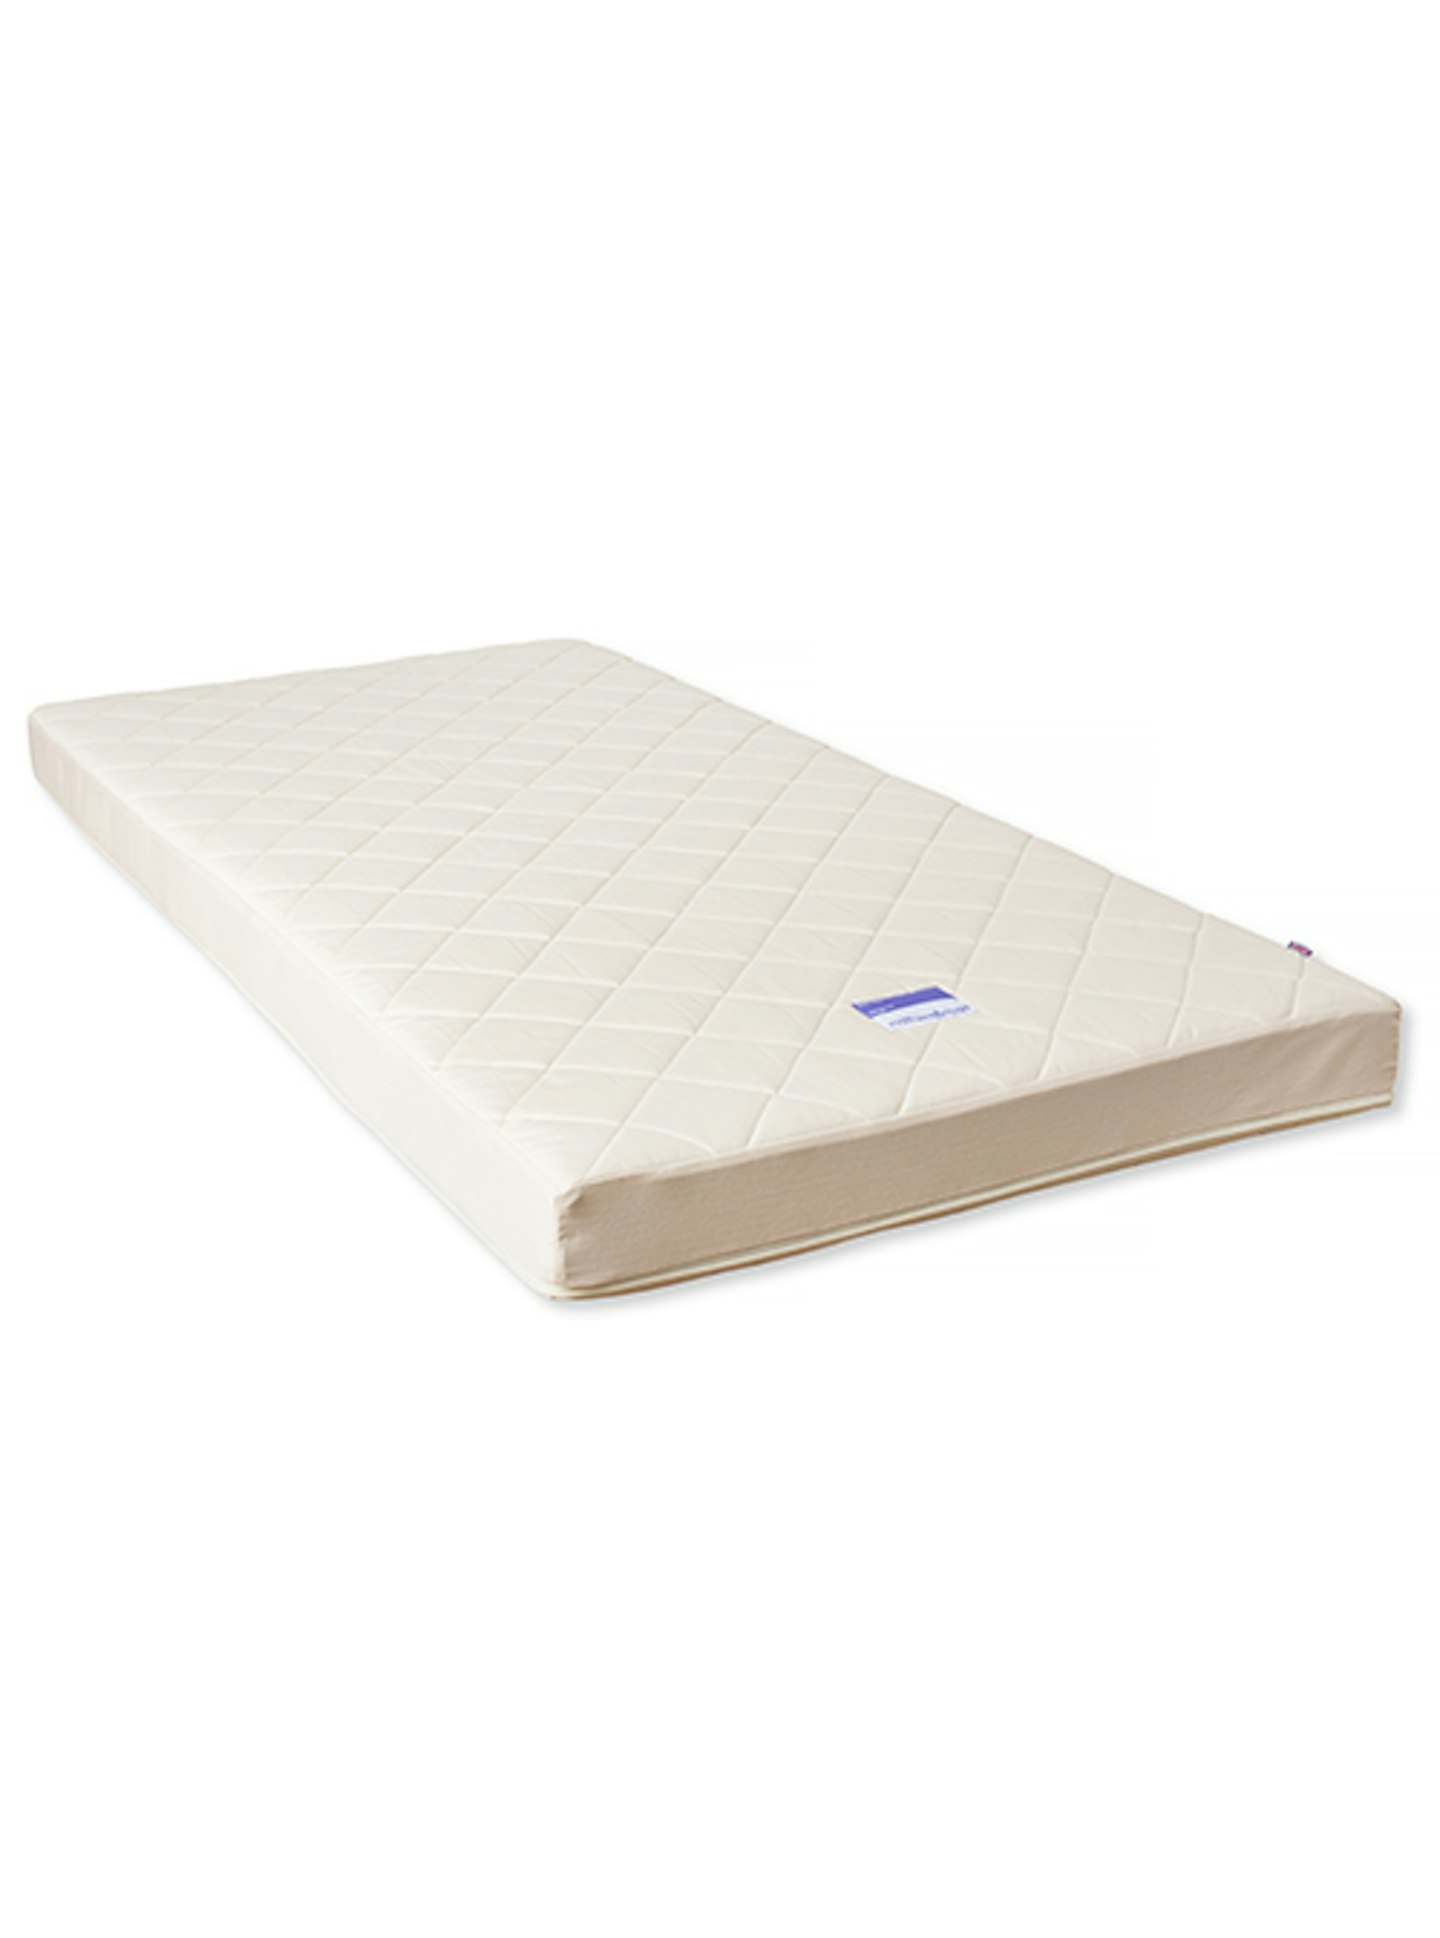 naturalmat coco mat mattress reviews